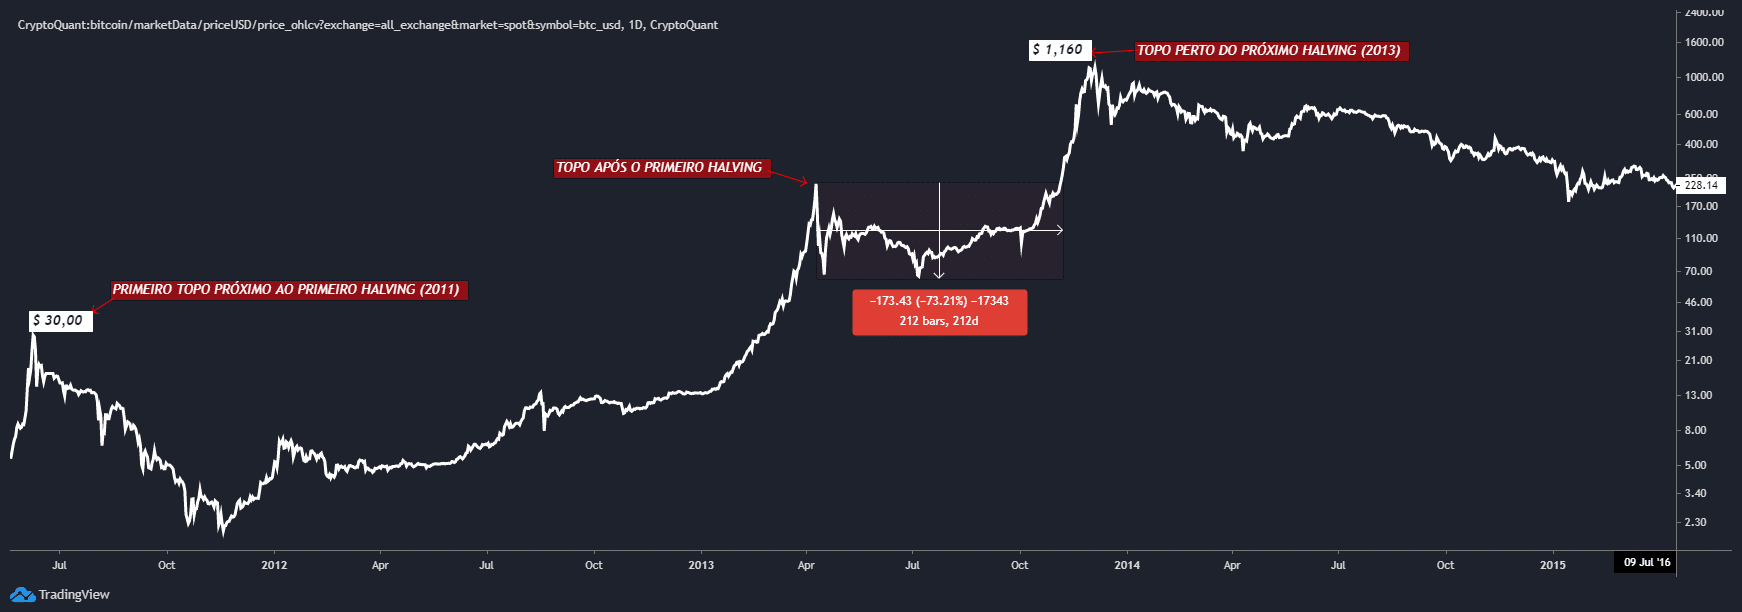 Gráfico ao vivo CryptoQuant Preço Bitcoin